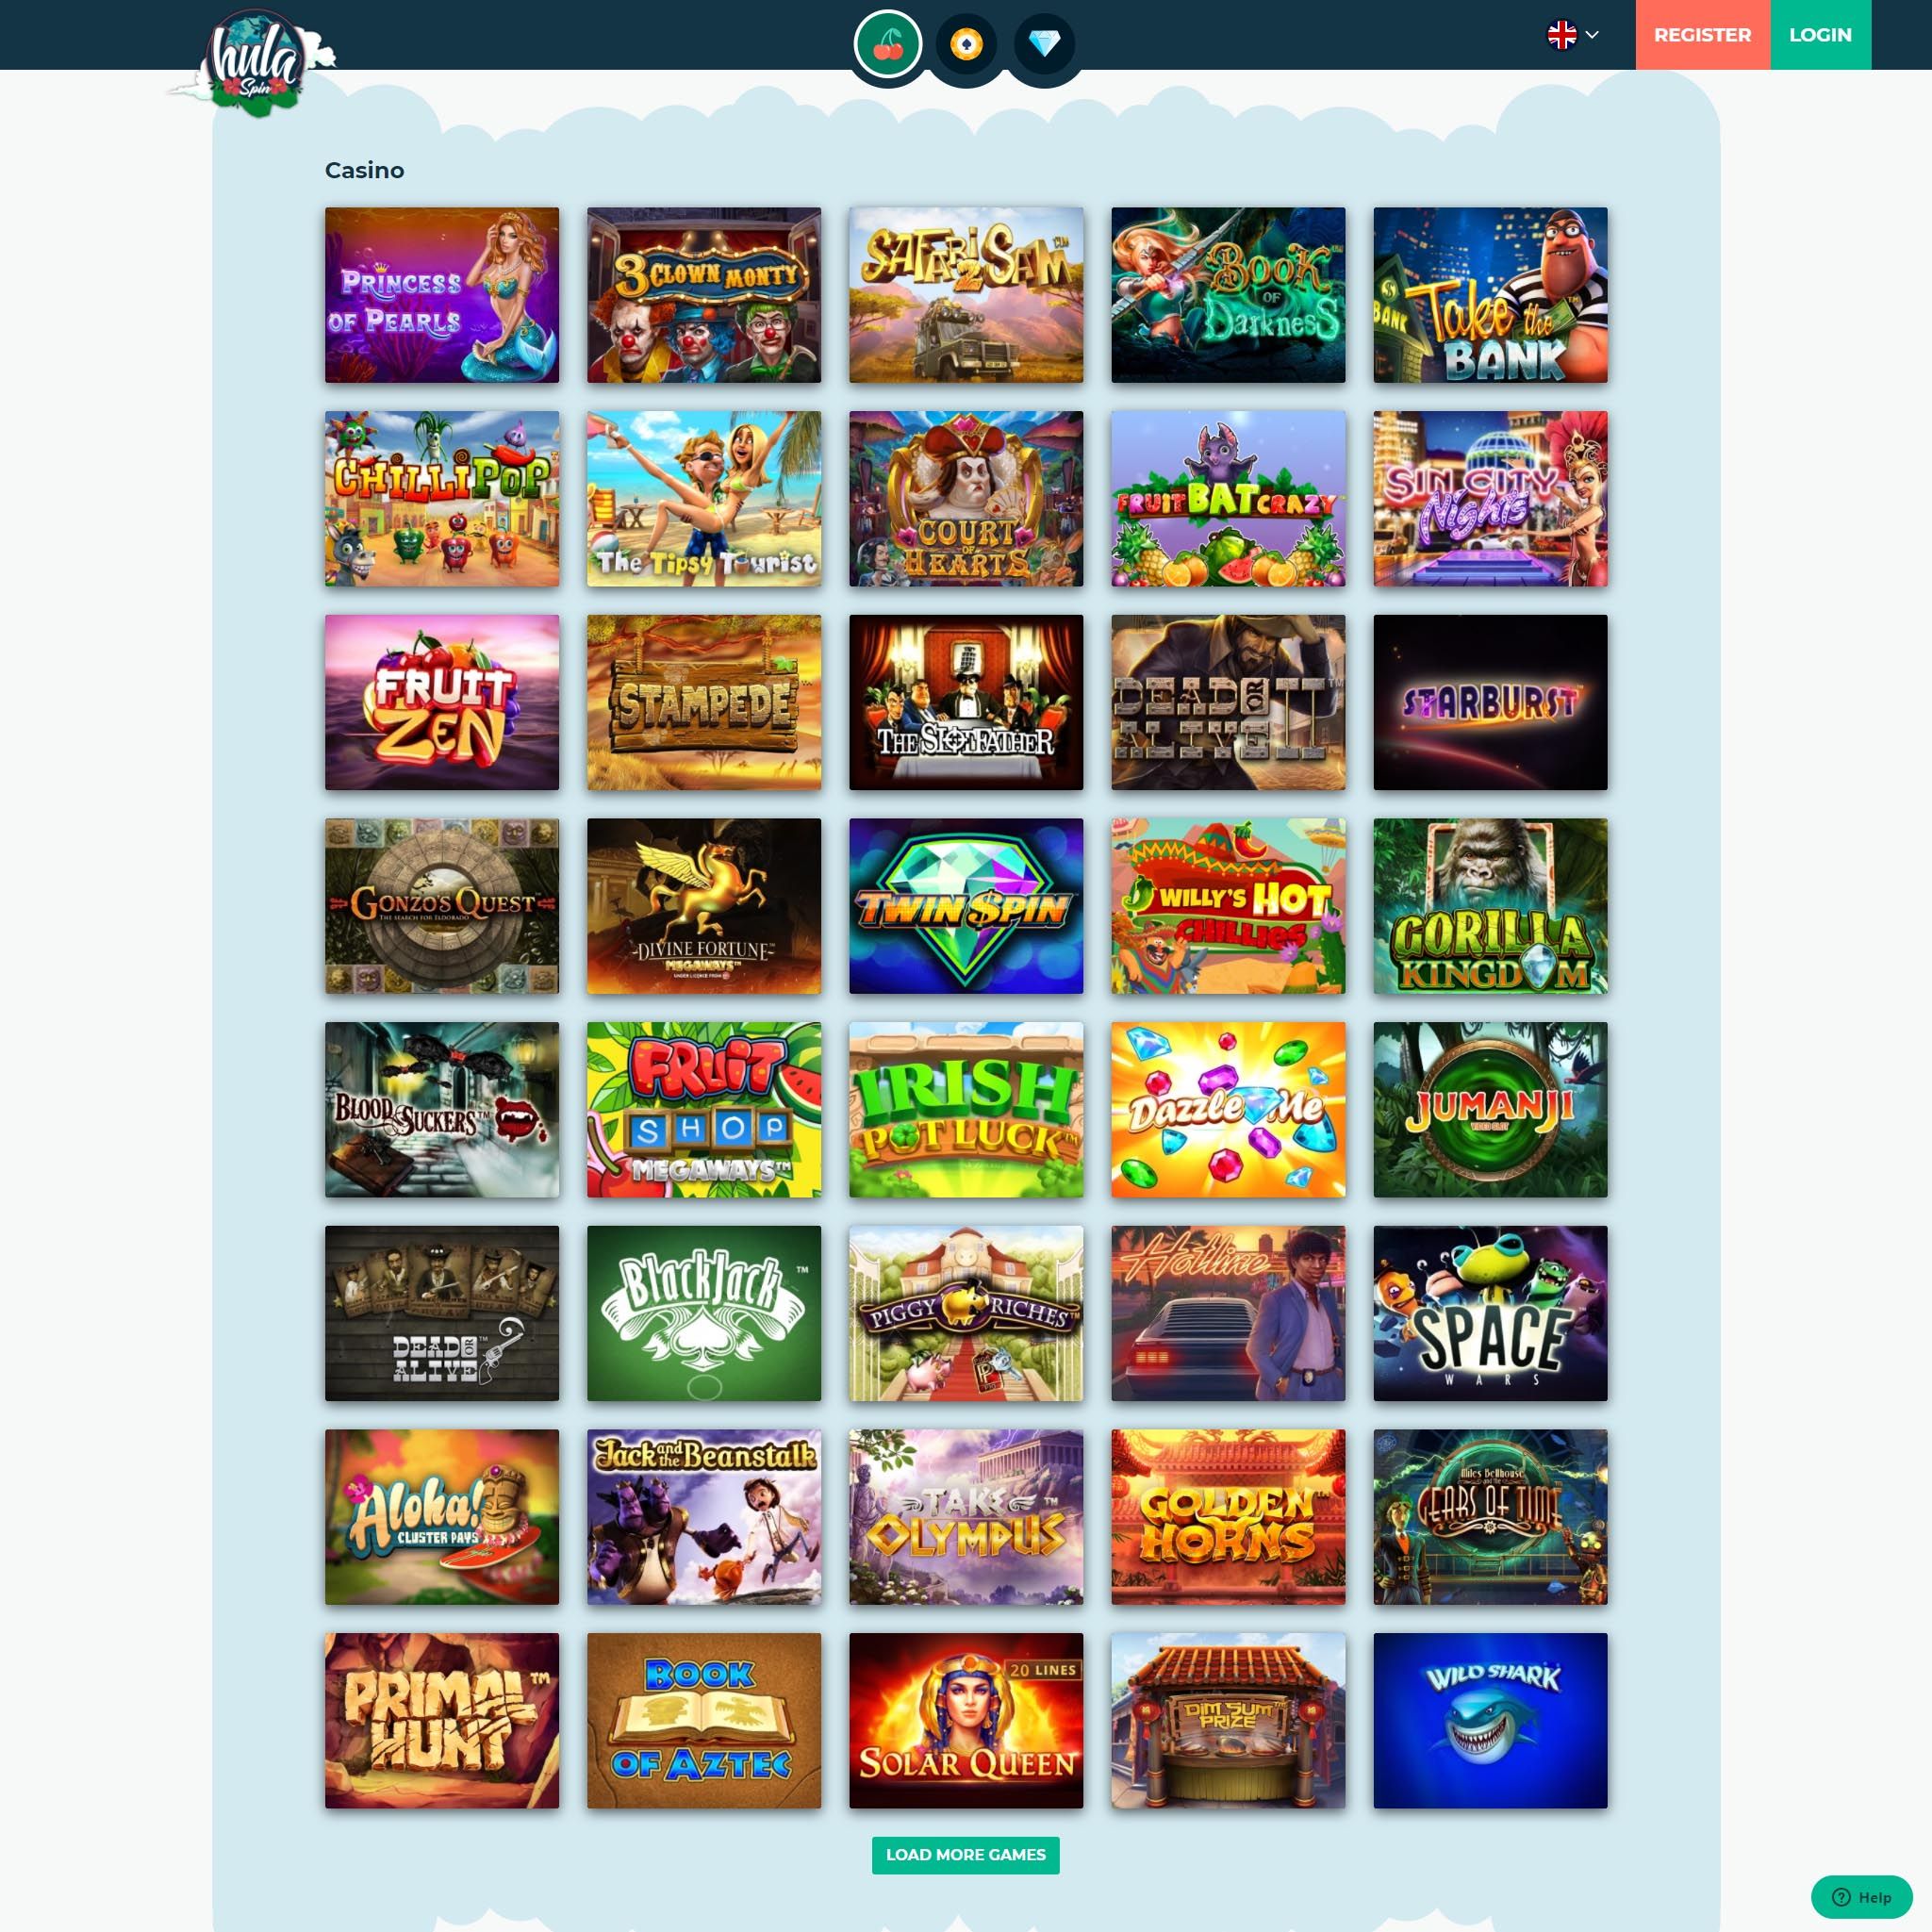 HulaSpin Casino full games catalogue